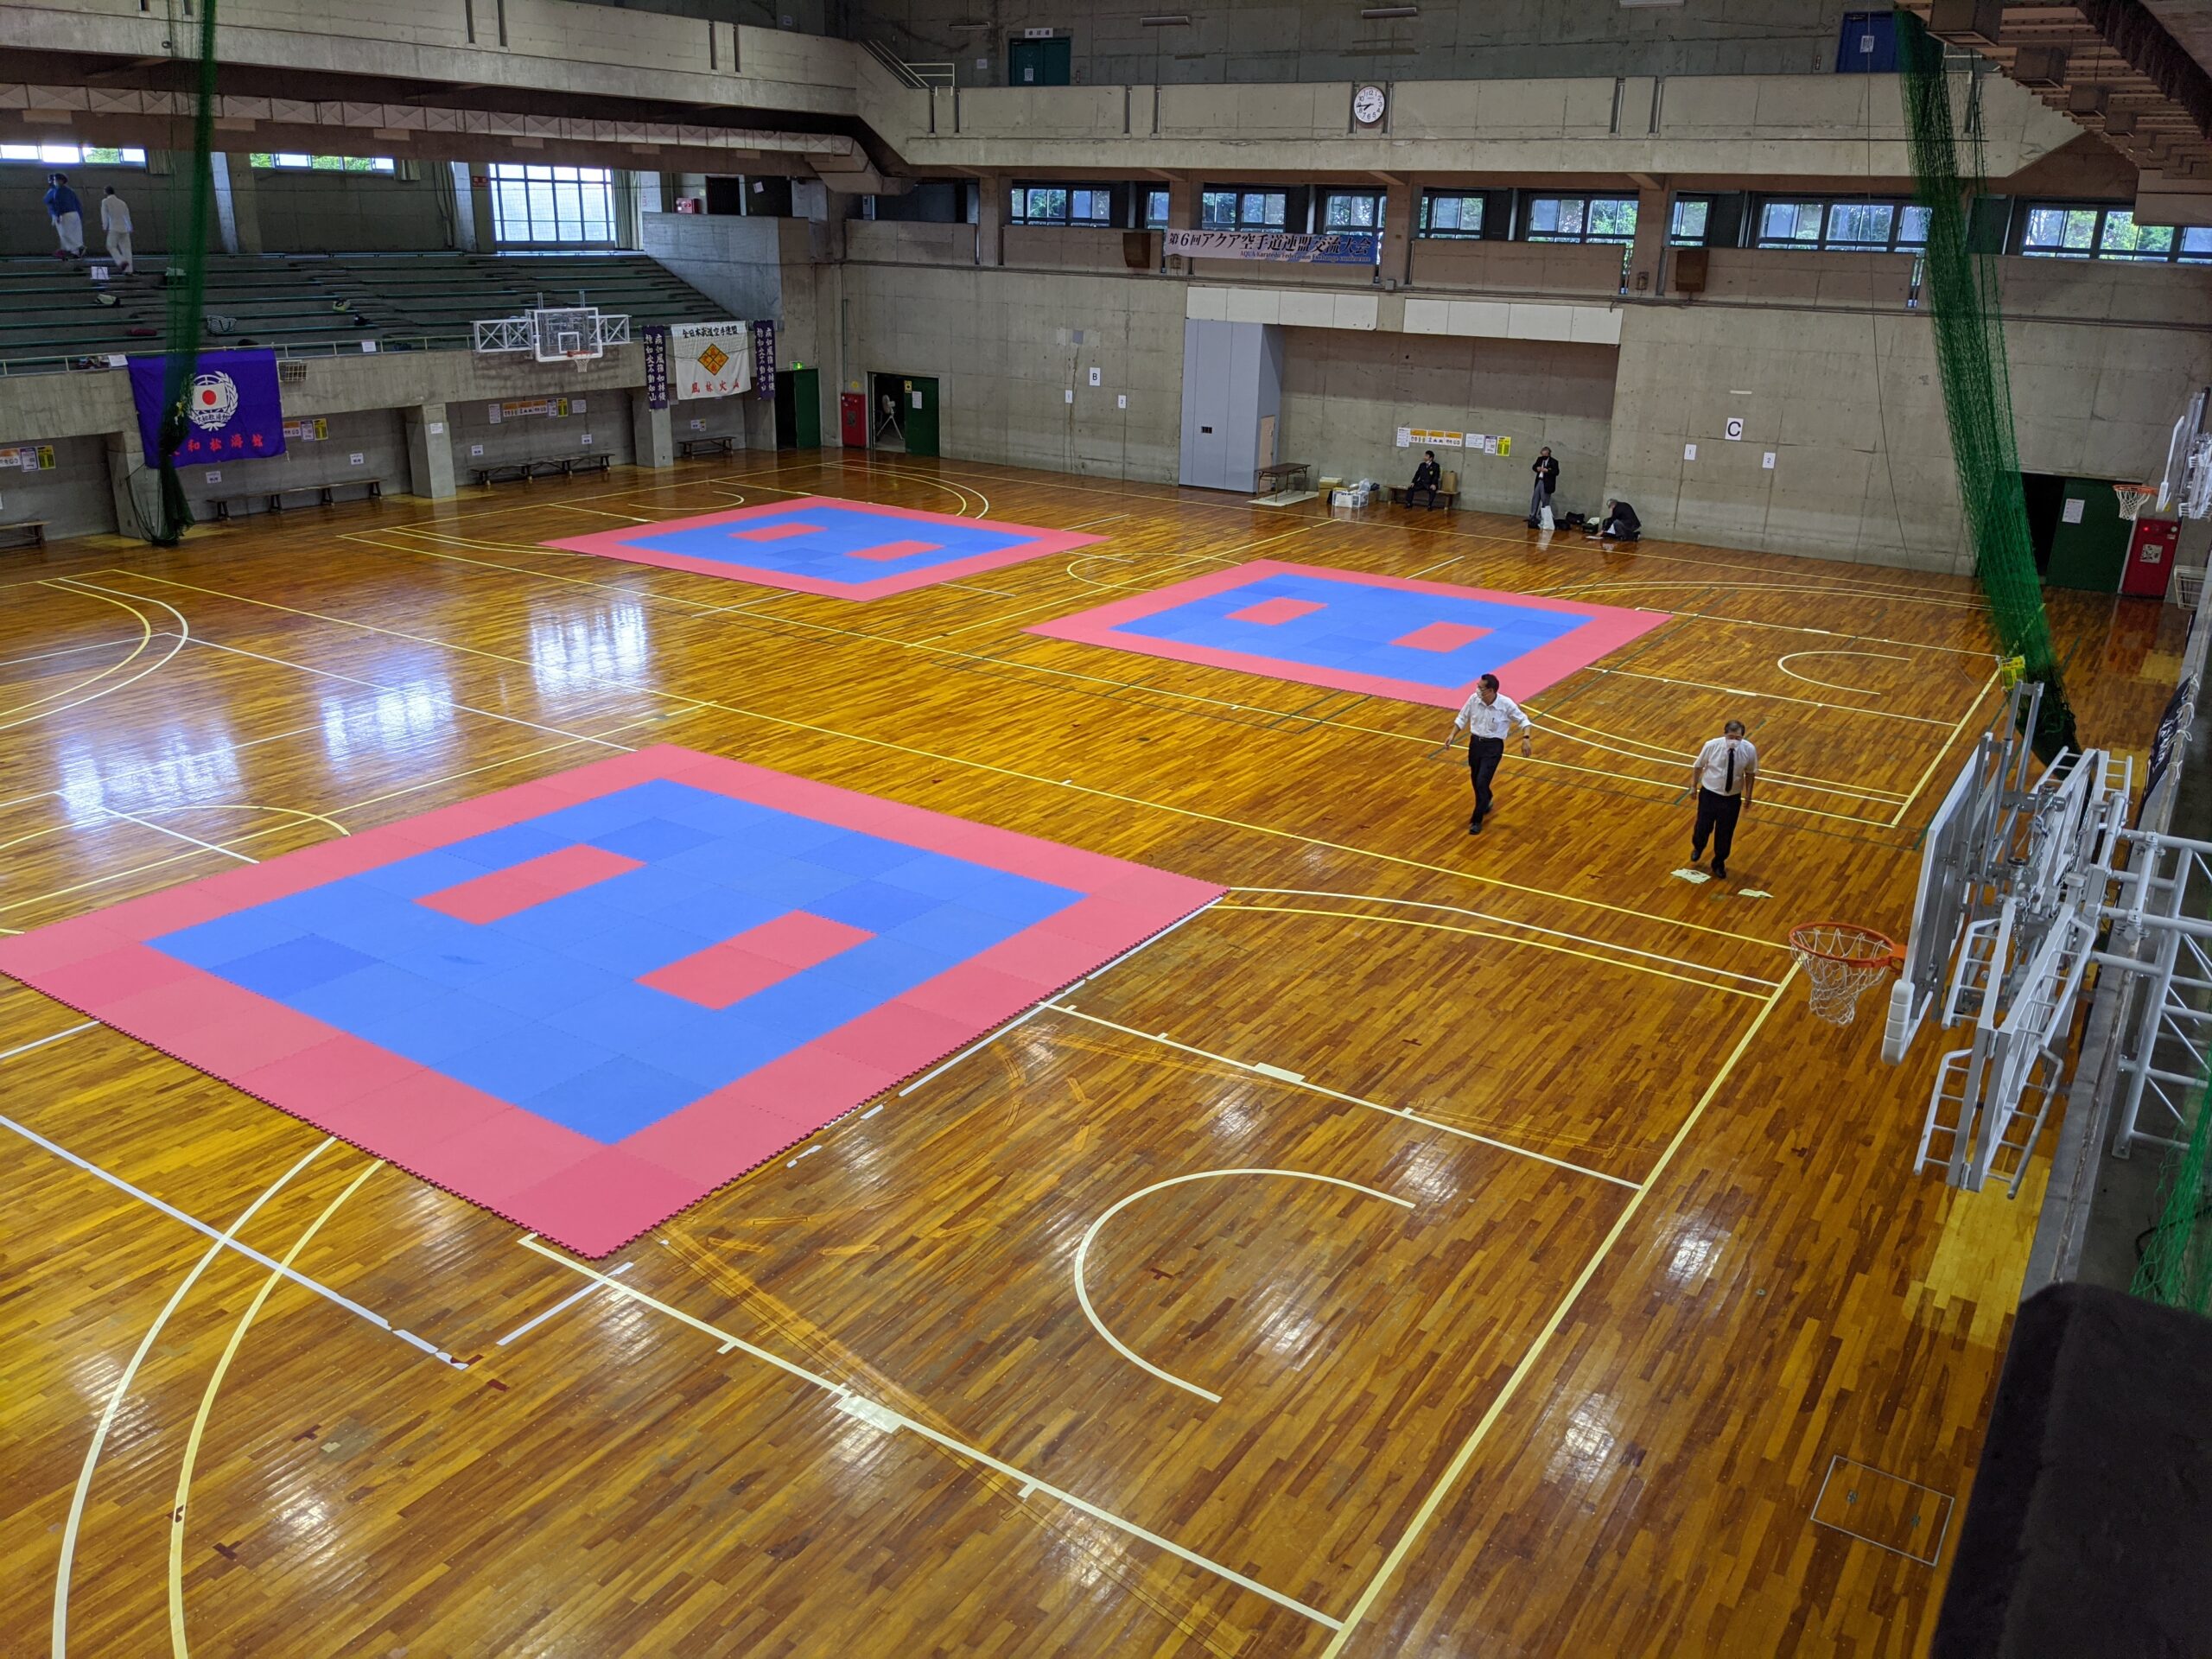 日本製鉄君津体育館にてジョイントマットがレンタルされました。実際に設置した様子の写真。